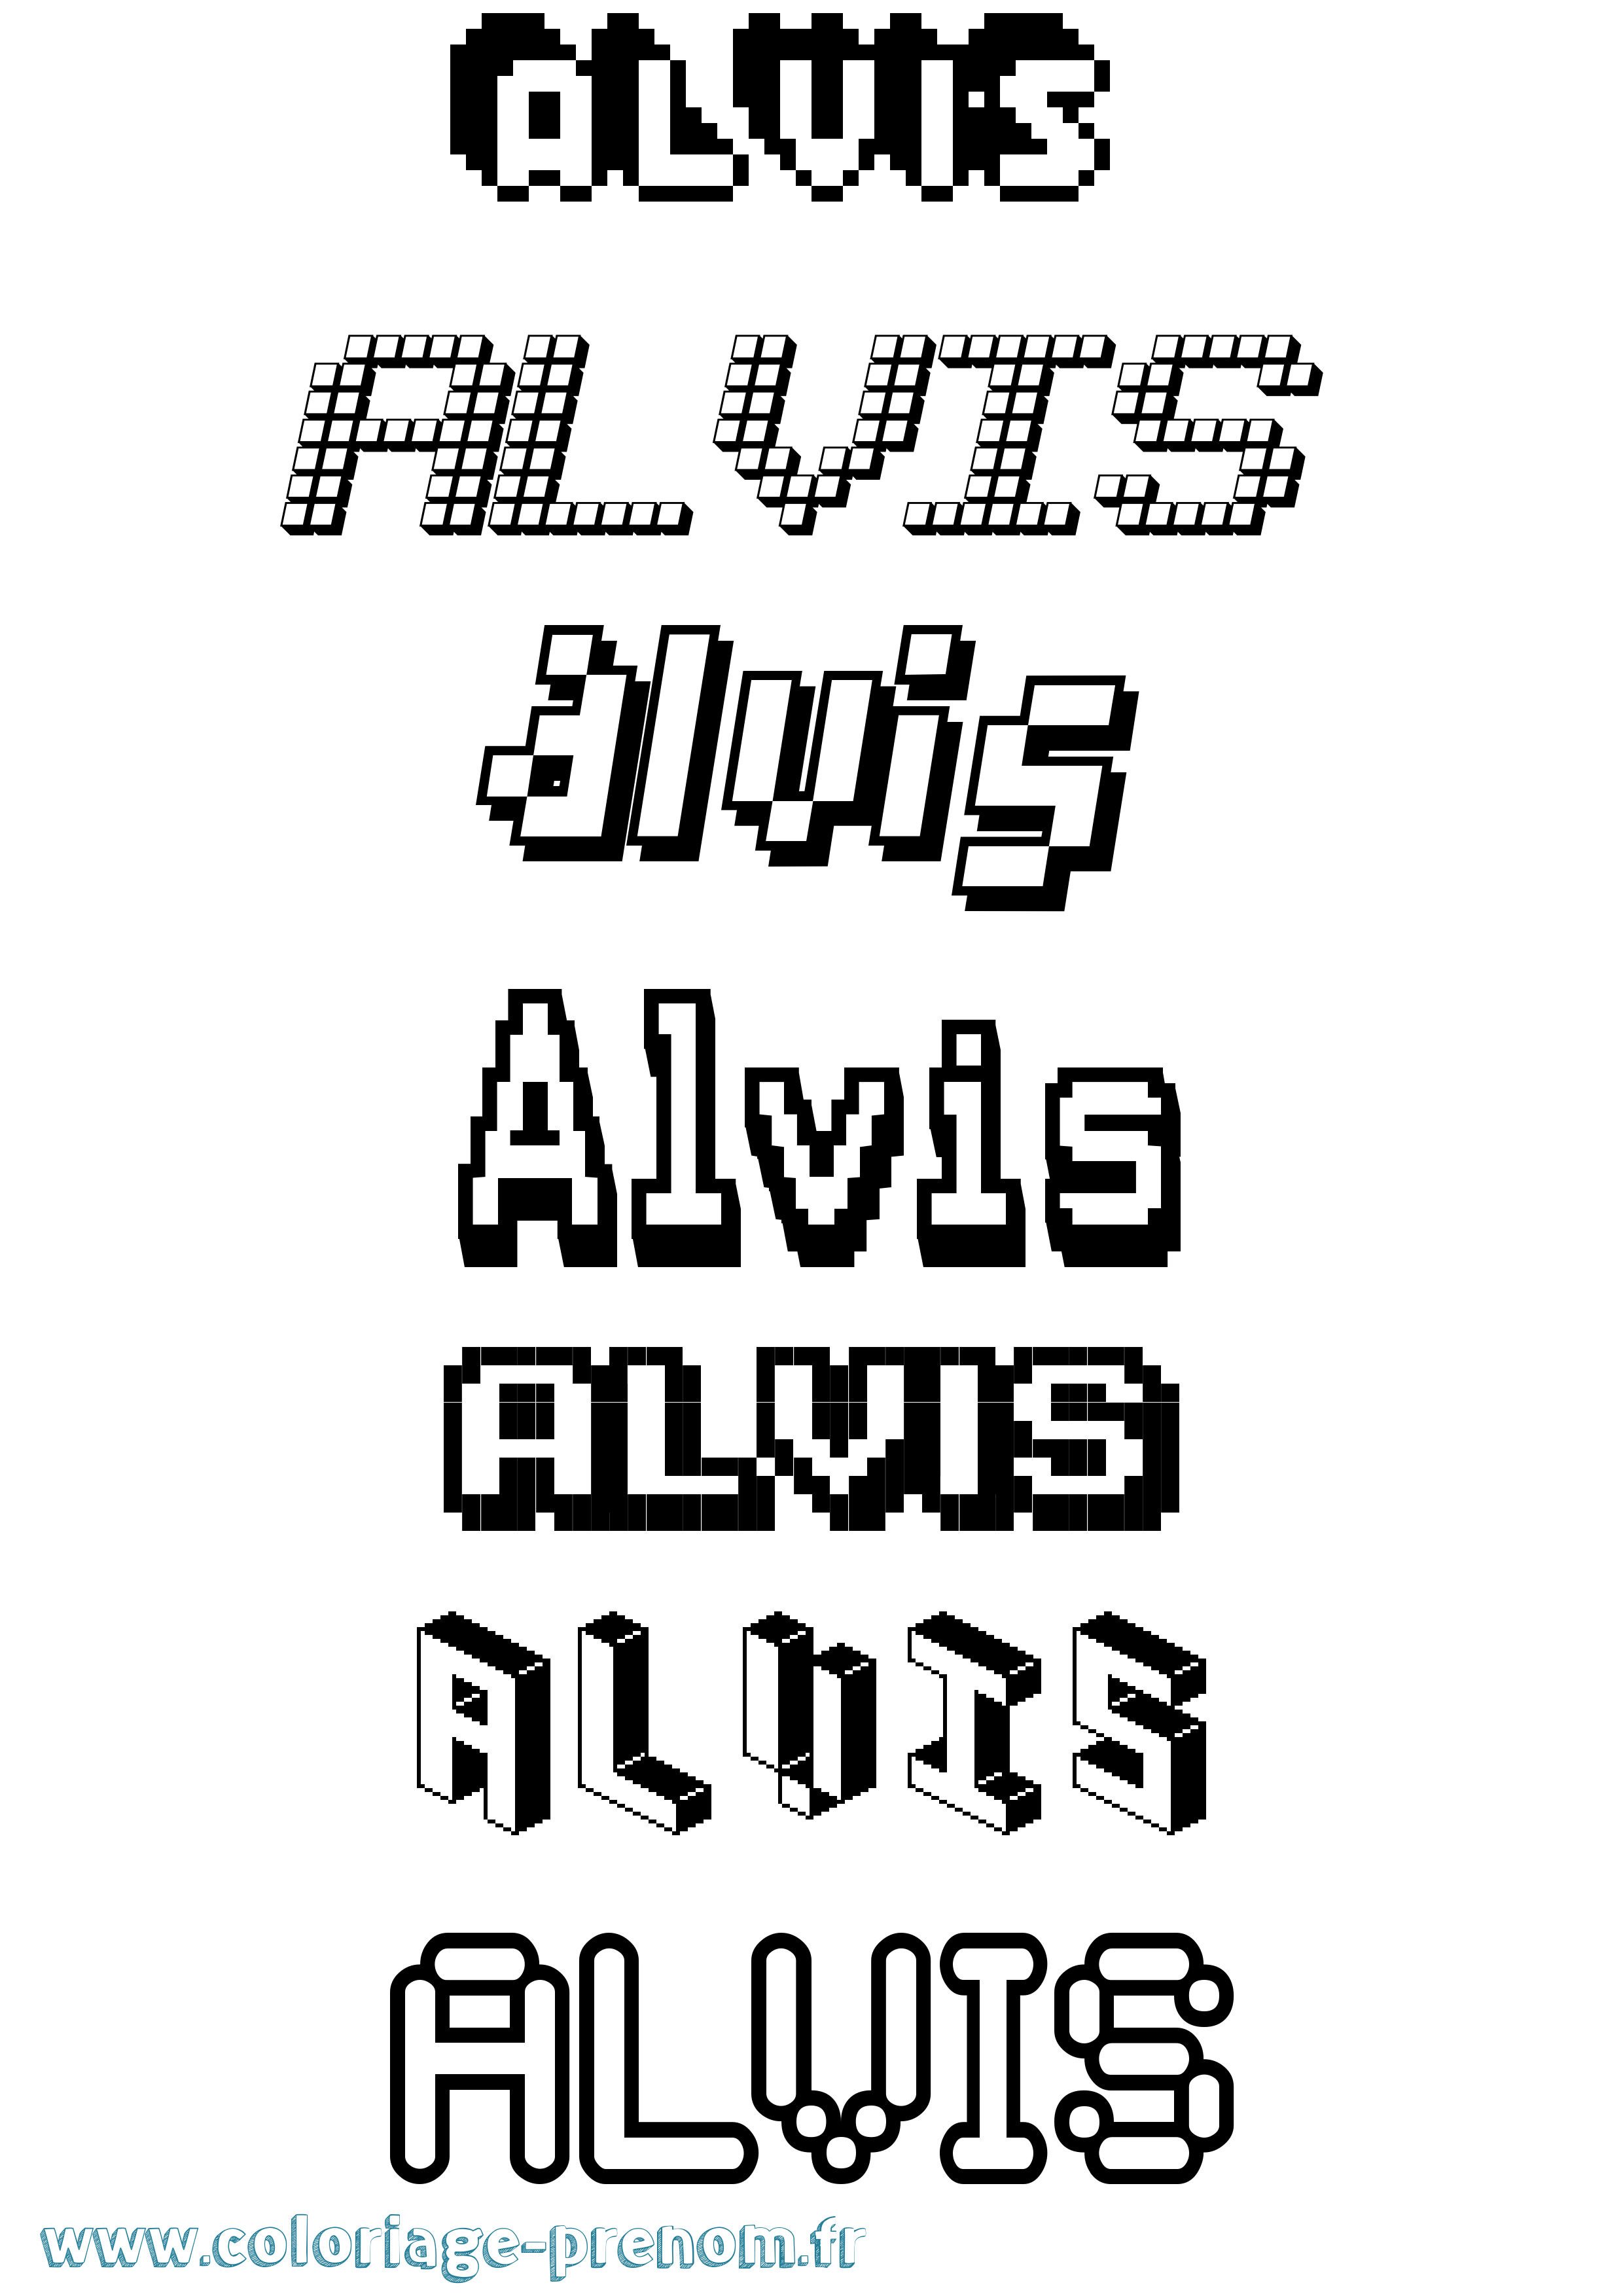 Coloriage prénom Alvis Pixel